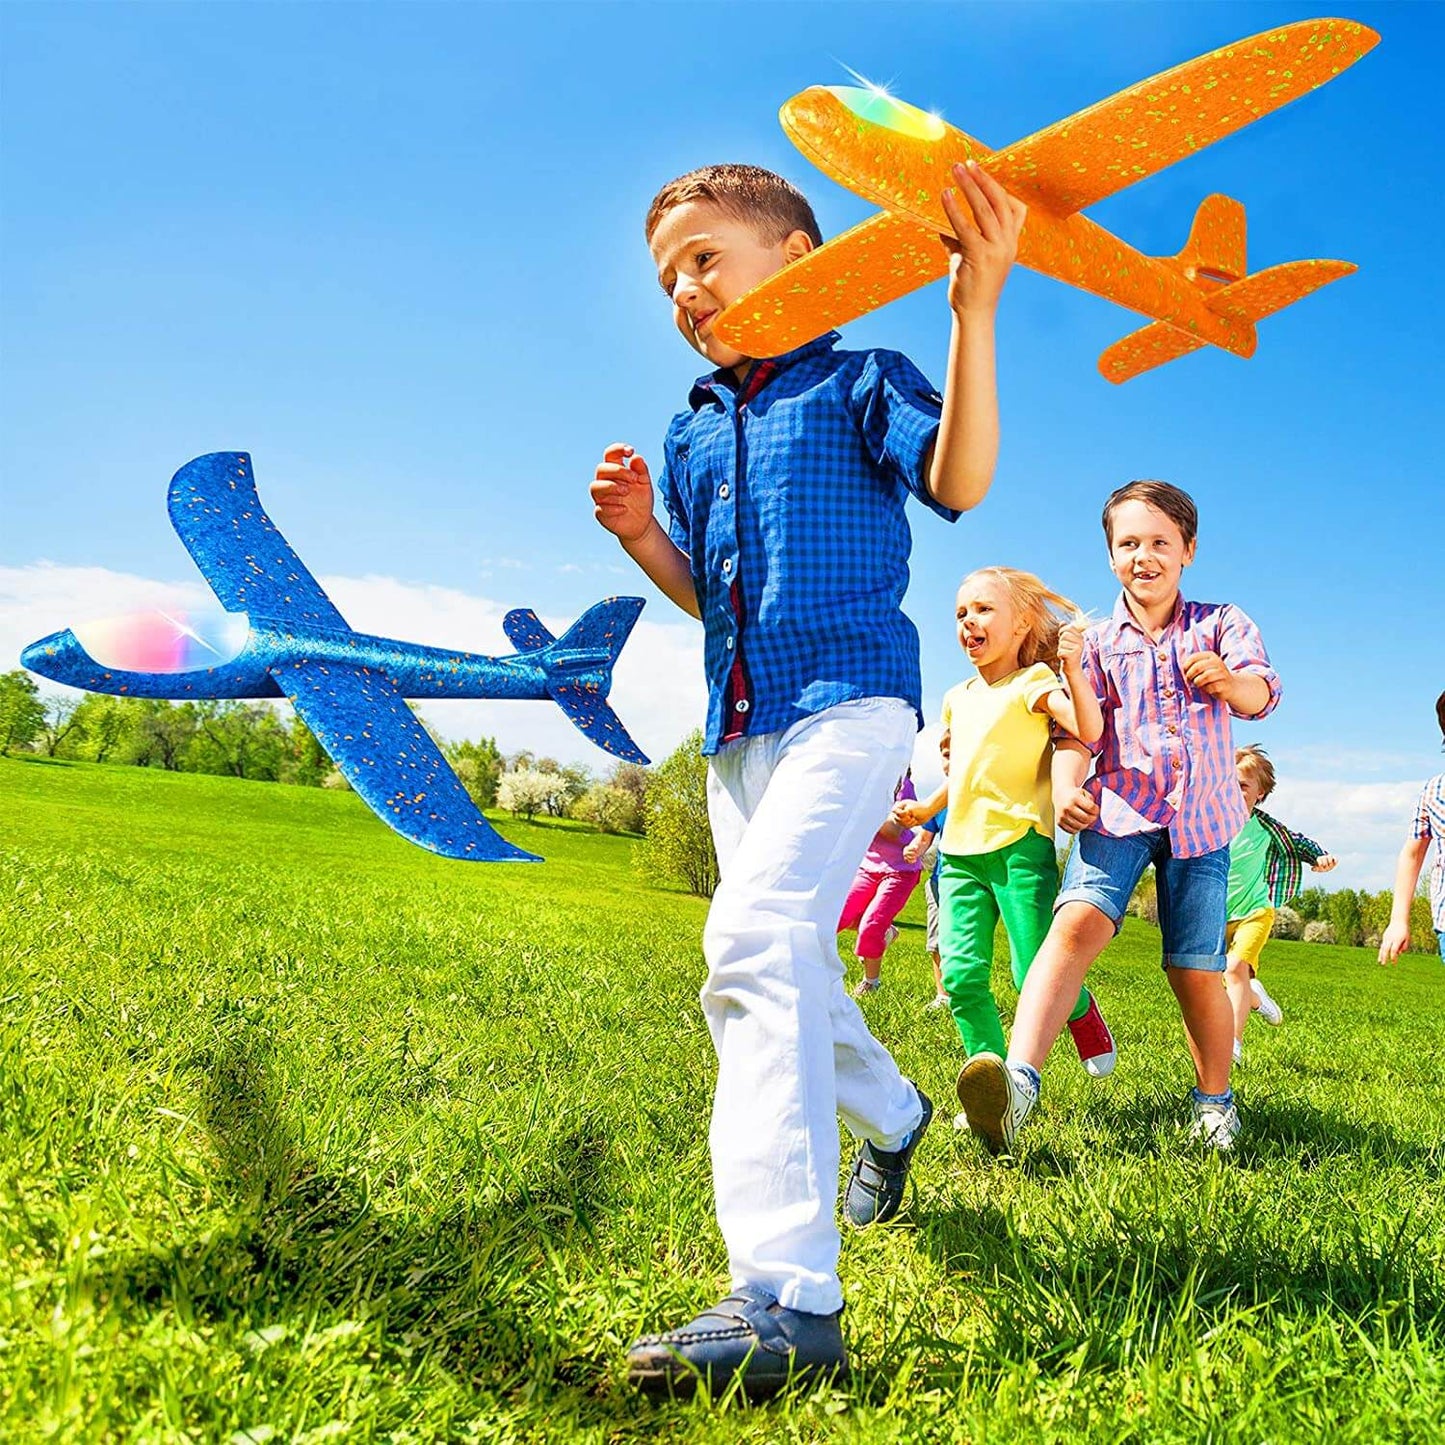 Obtenga el mejor juguete planeador volador para niños: modelo de avión de espuma grande de 50 cm con luz LED y lanzamiento manual para diversión y juegos al aire libre